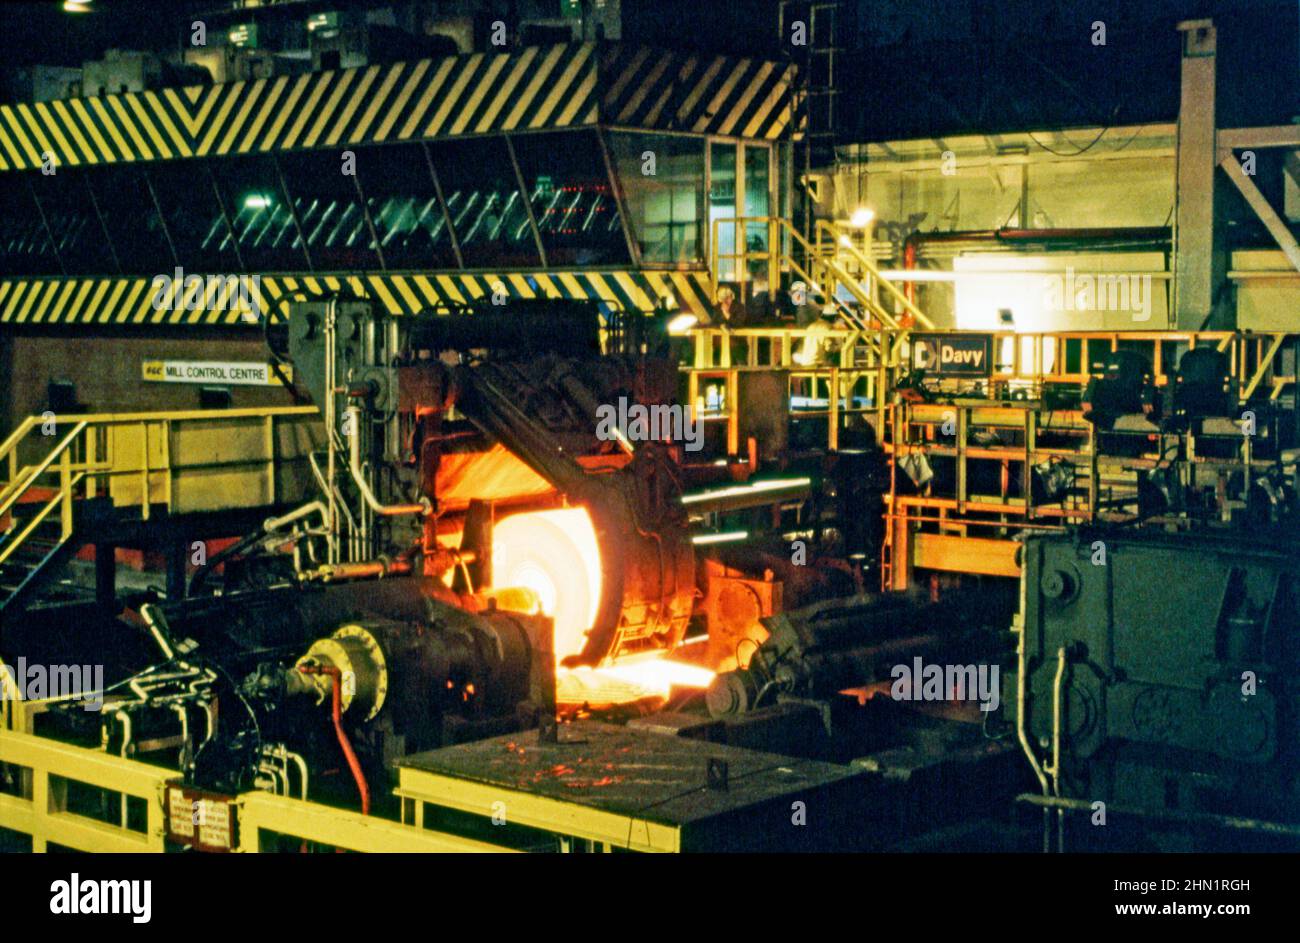 Une vue à la mi-1980s à l'intérieur des aciéries de Port Talbot, une usine intégrée de production d'acier à Port Talbot, West Glamourgan, pays de Galles, Royaume-Uni. À l'intérieur du moulin, des tôles d'acier chaudes sont déployées sur la chaîne de production. Le centre de contrôle du moulin est en arrière-plan. Cette image est tirée d'une transparence de couleur vintage – une photographie vintage 1980s. Banque D'Images